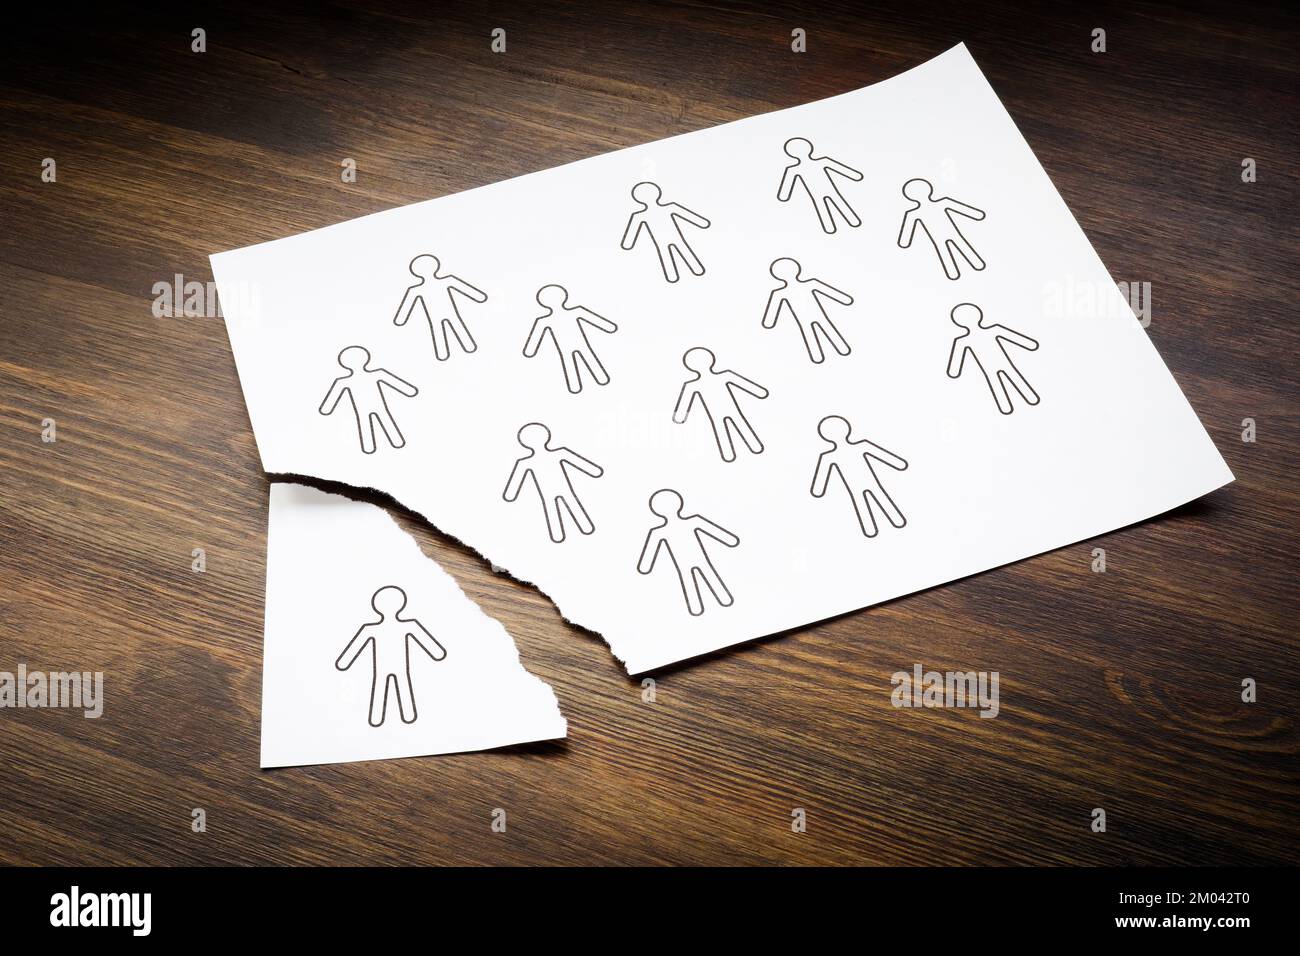 Concepto de empleados desvinculados. Figuras de personas en una hoja de papel y una es arrancada. Foto de stock